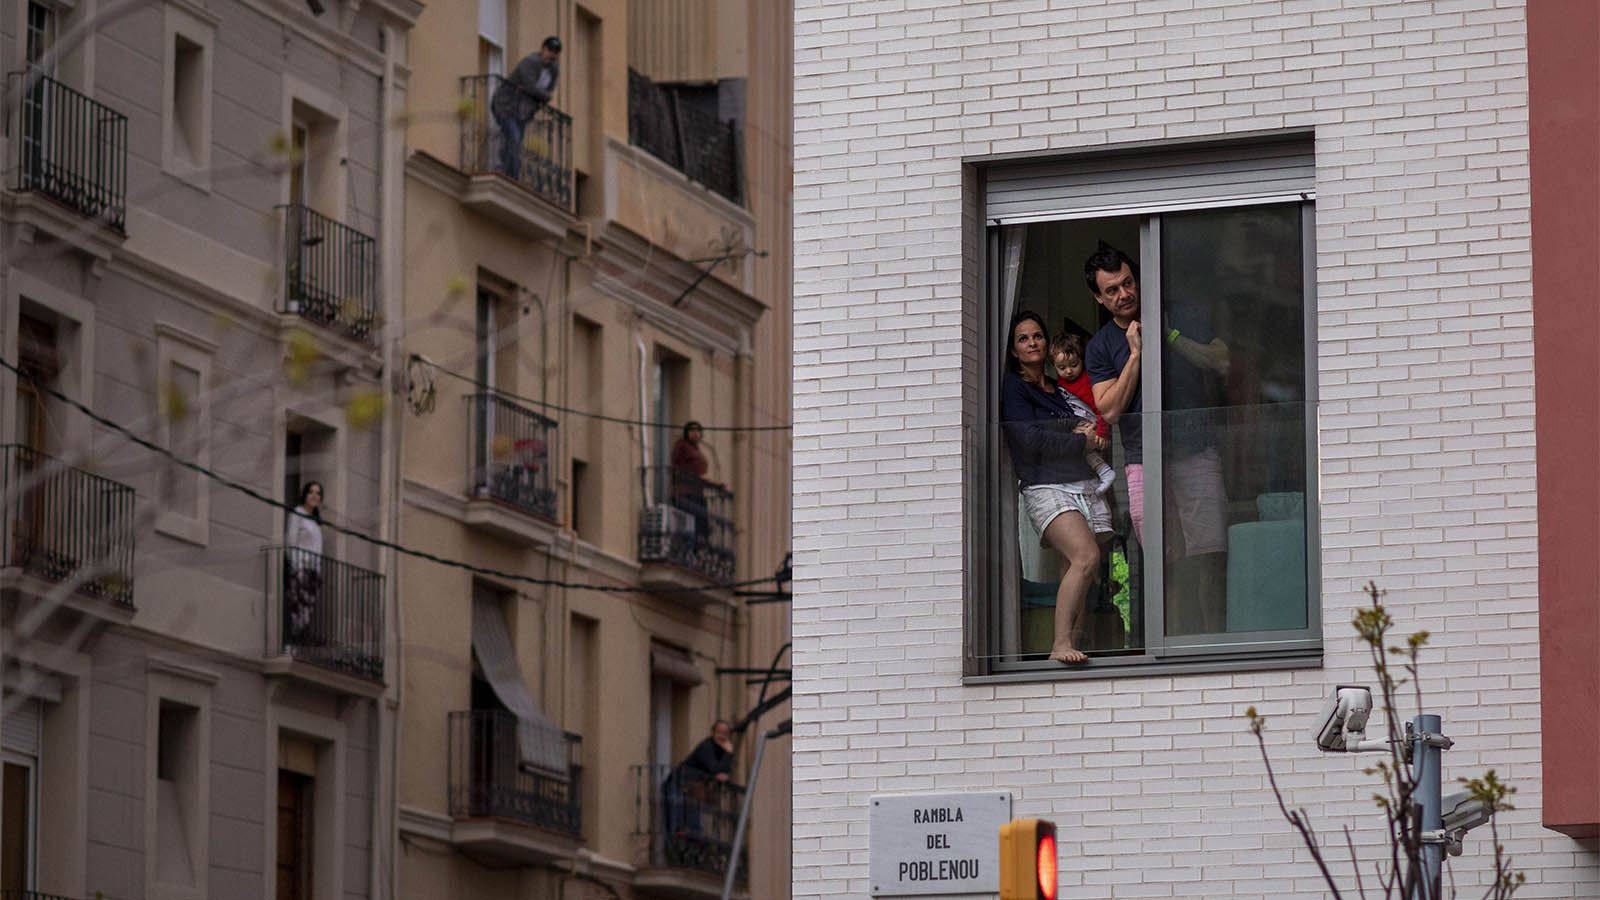 אנשים במרפסות במהלך סגר כללי בעיר ברצלונה שבספרד. 29 במרץ 2020(AP Photo/Emilio Morenatti)